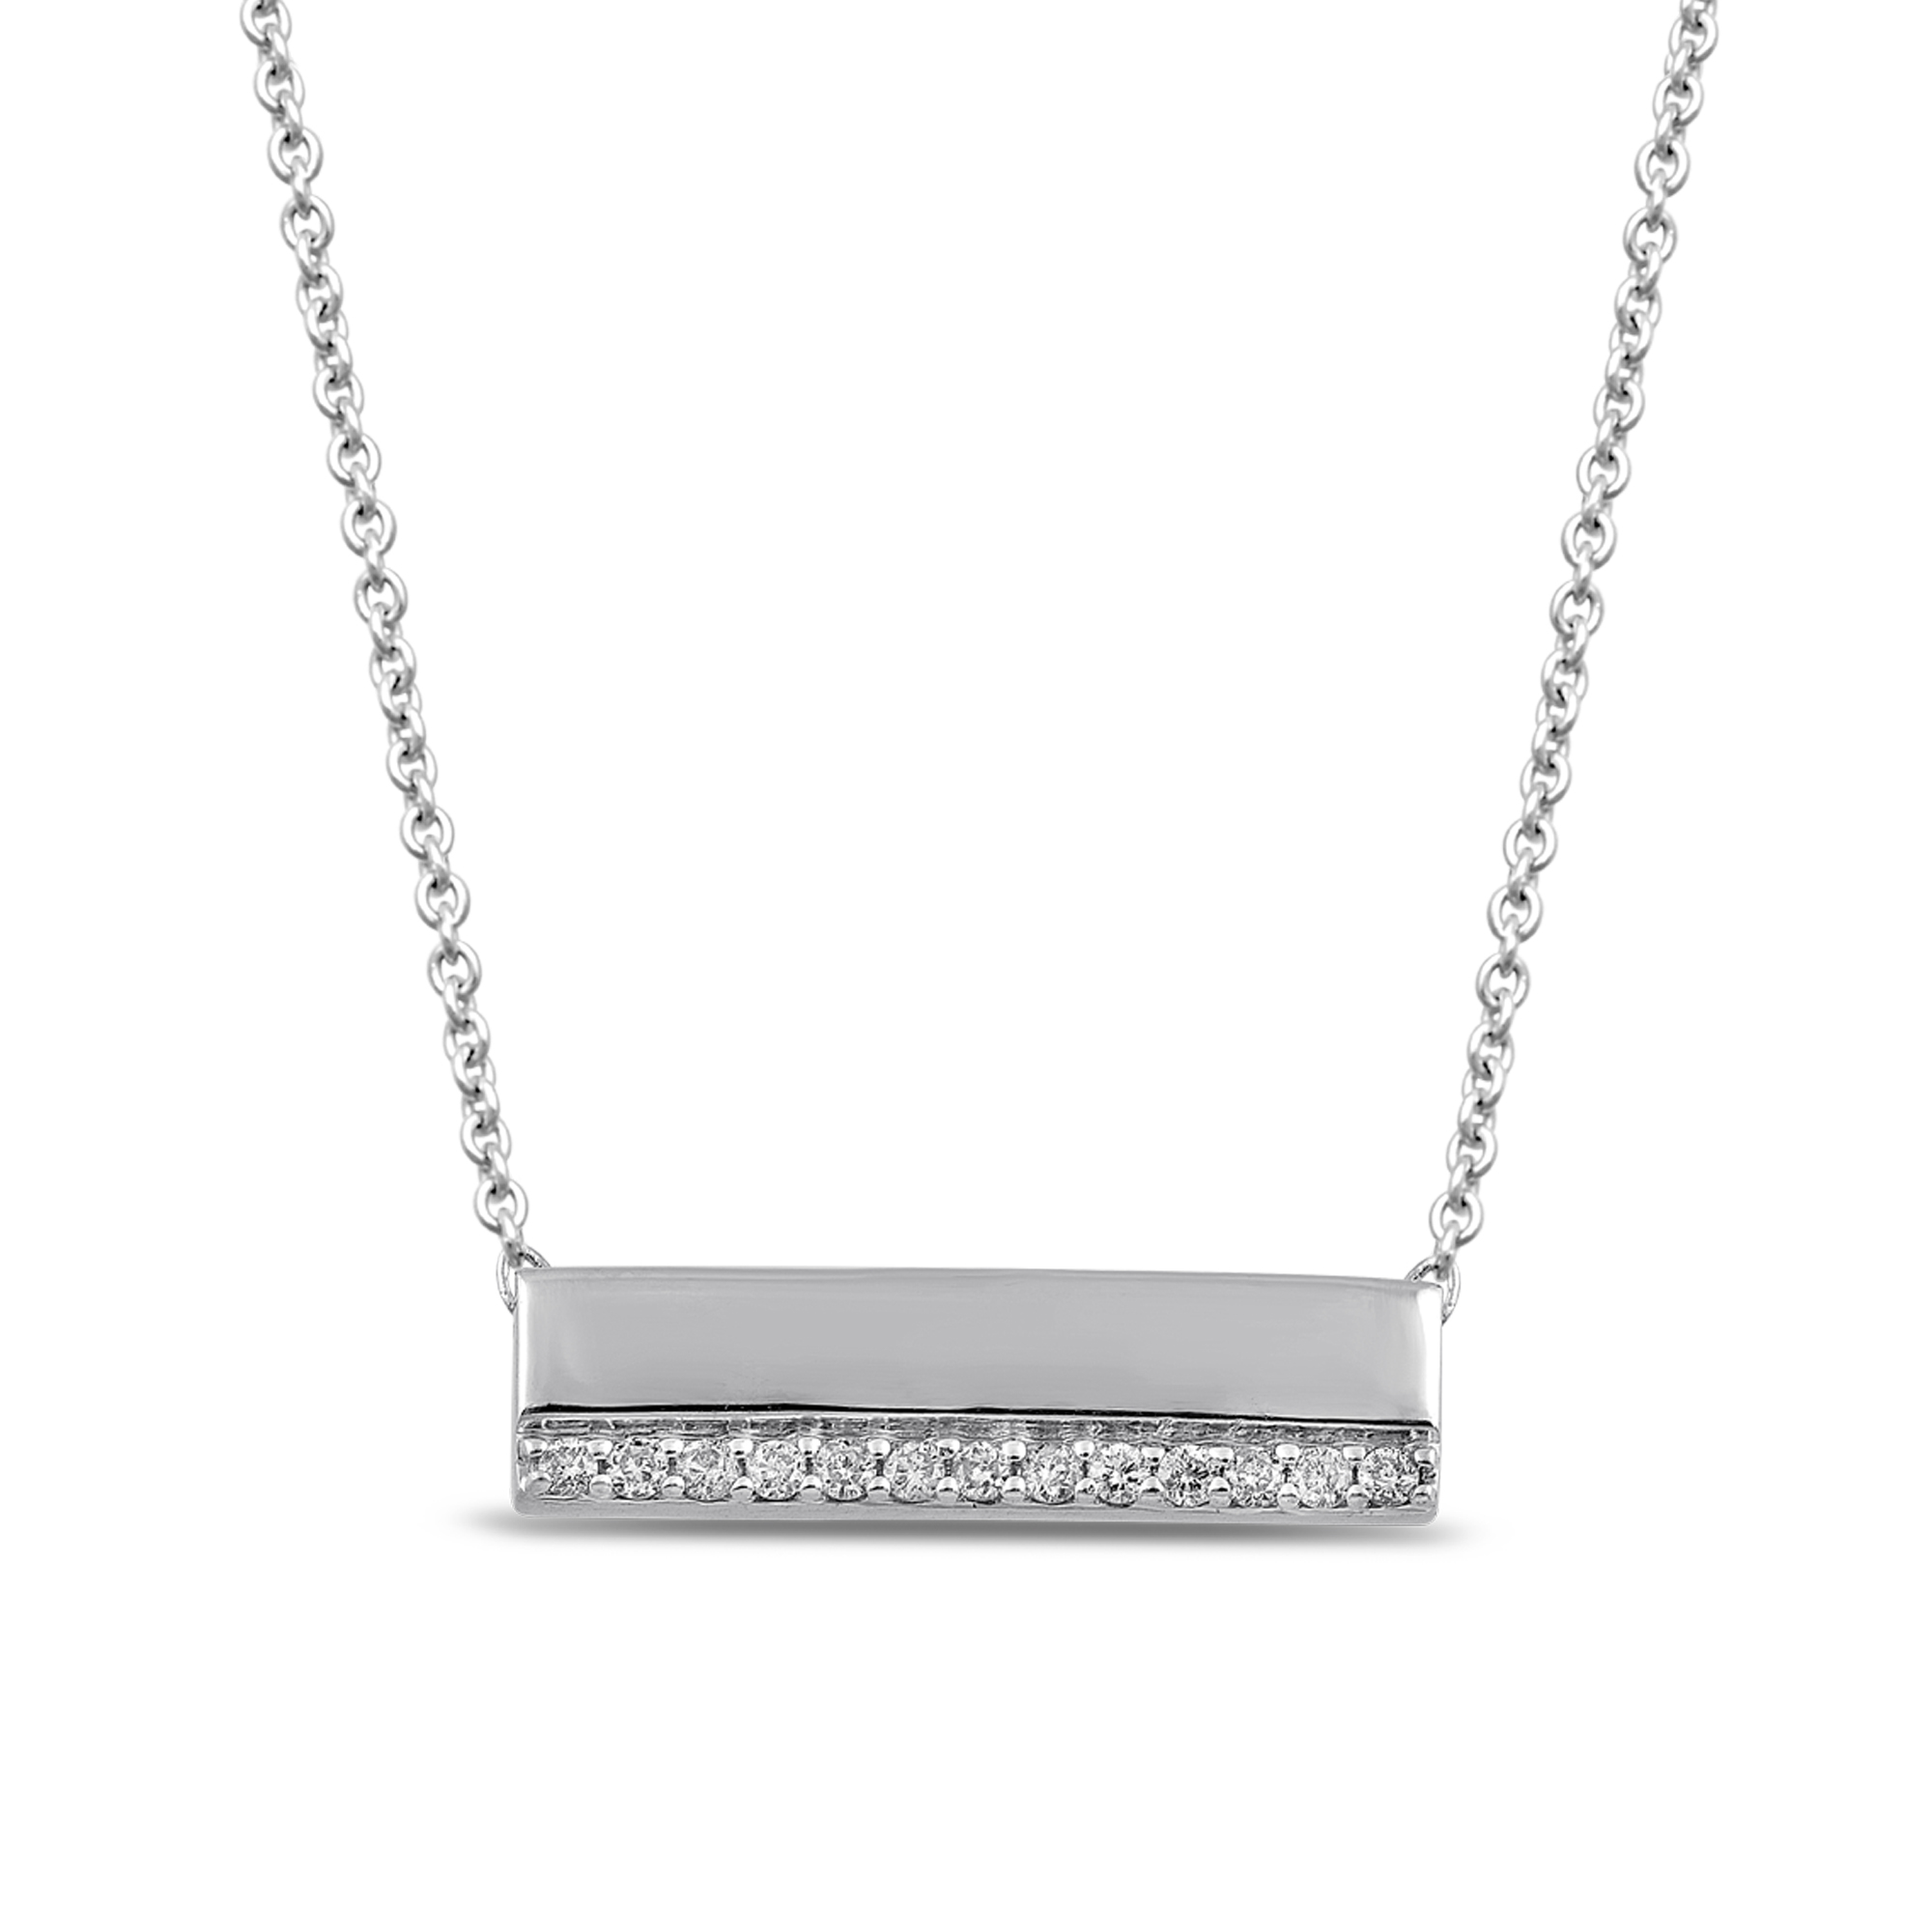 GC CZ Diamond Necklace/Statement Jewelry/Statement Necklace/Elegant Jewelry